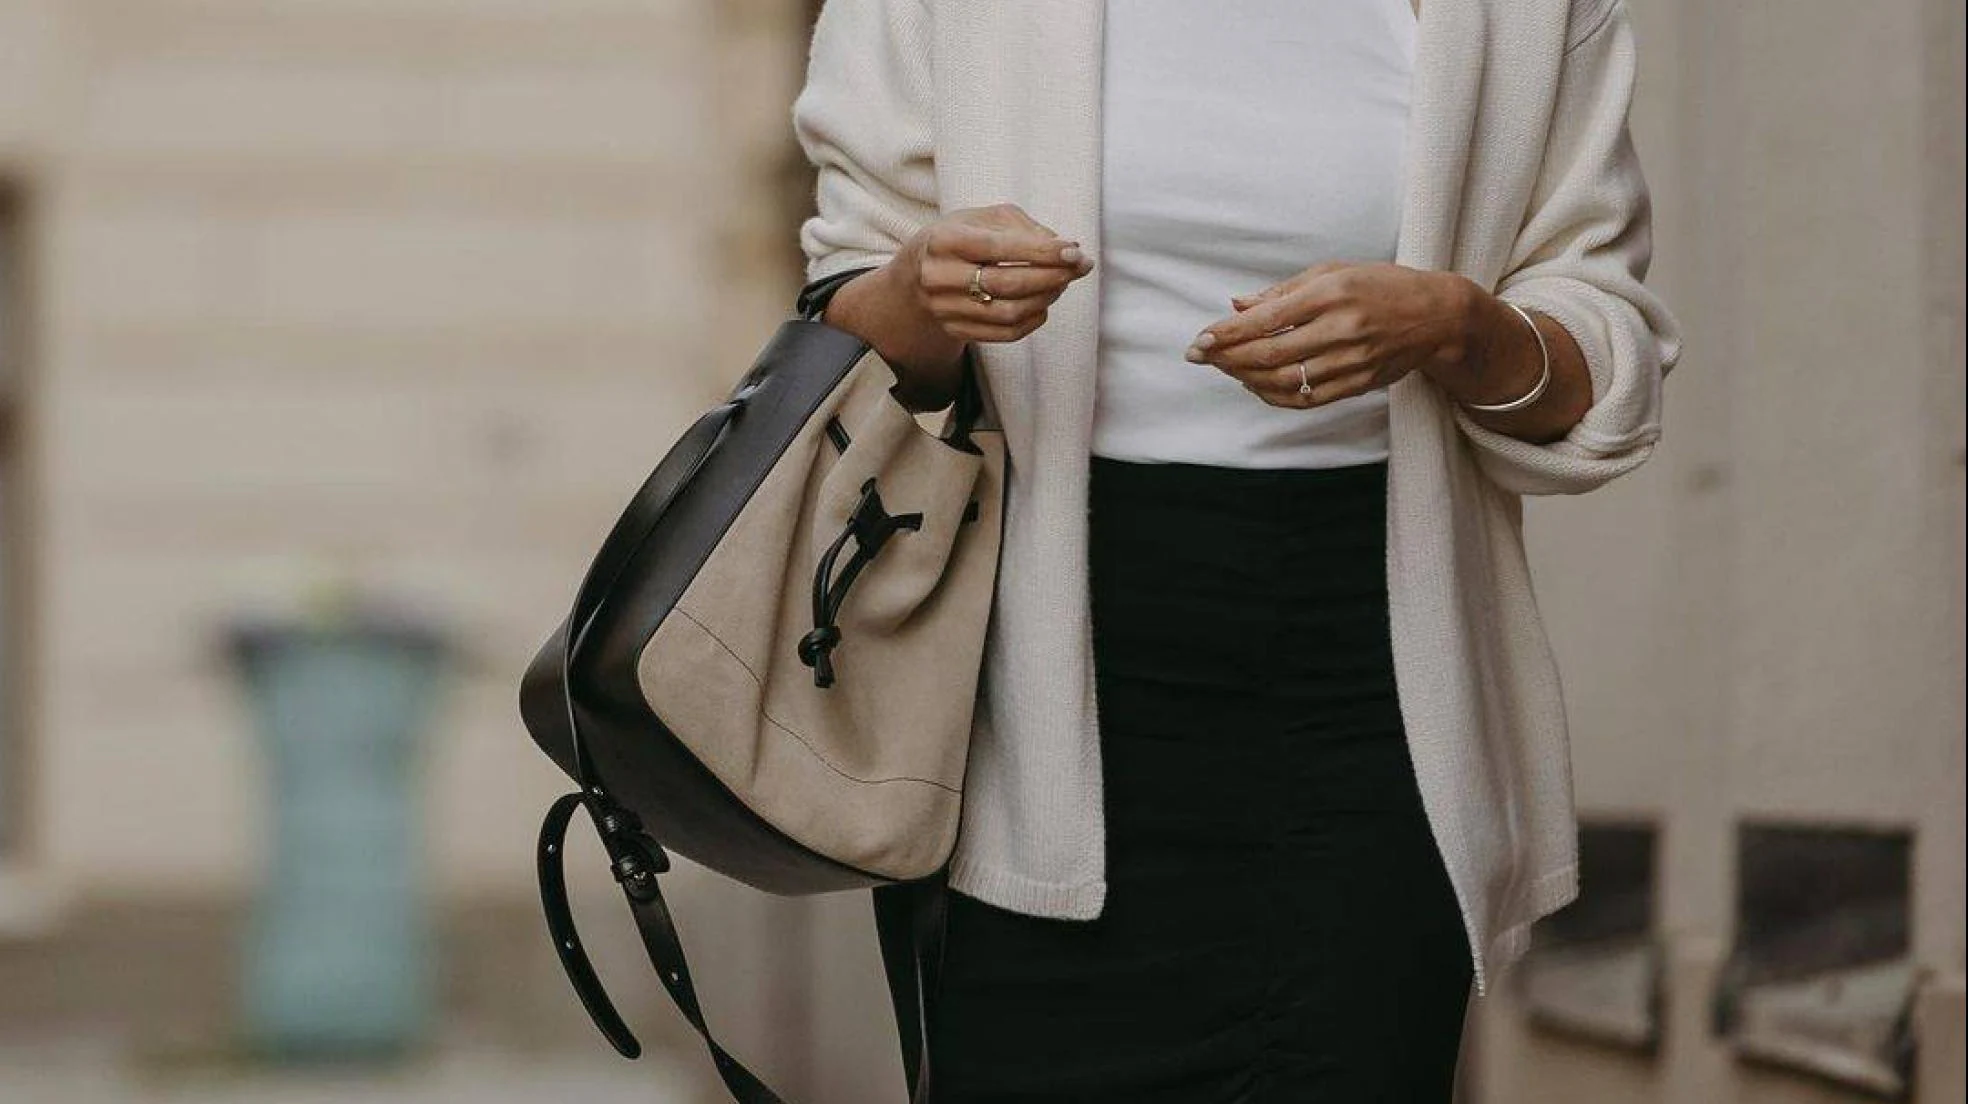 Estos son los bolsos baratos, prácticos, y elegantes Parfois ideales tus looks diarios | Mujer Hoy